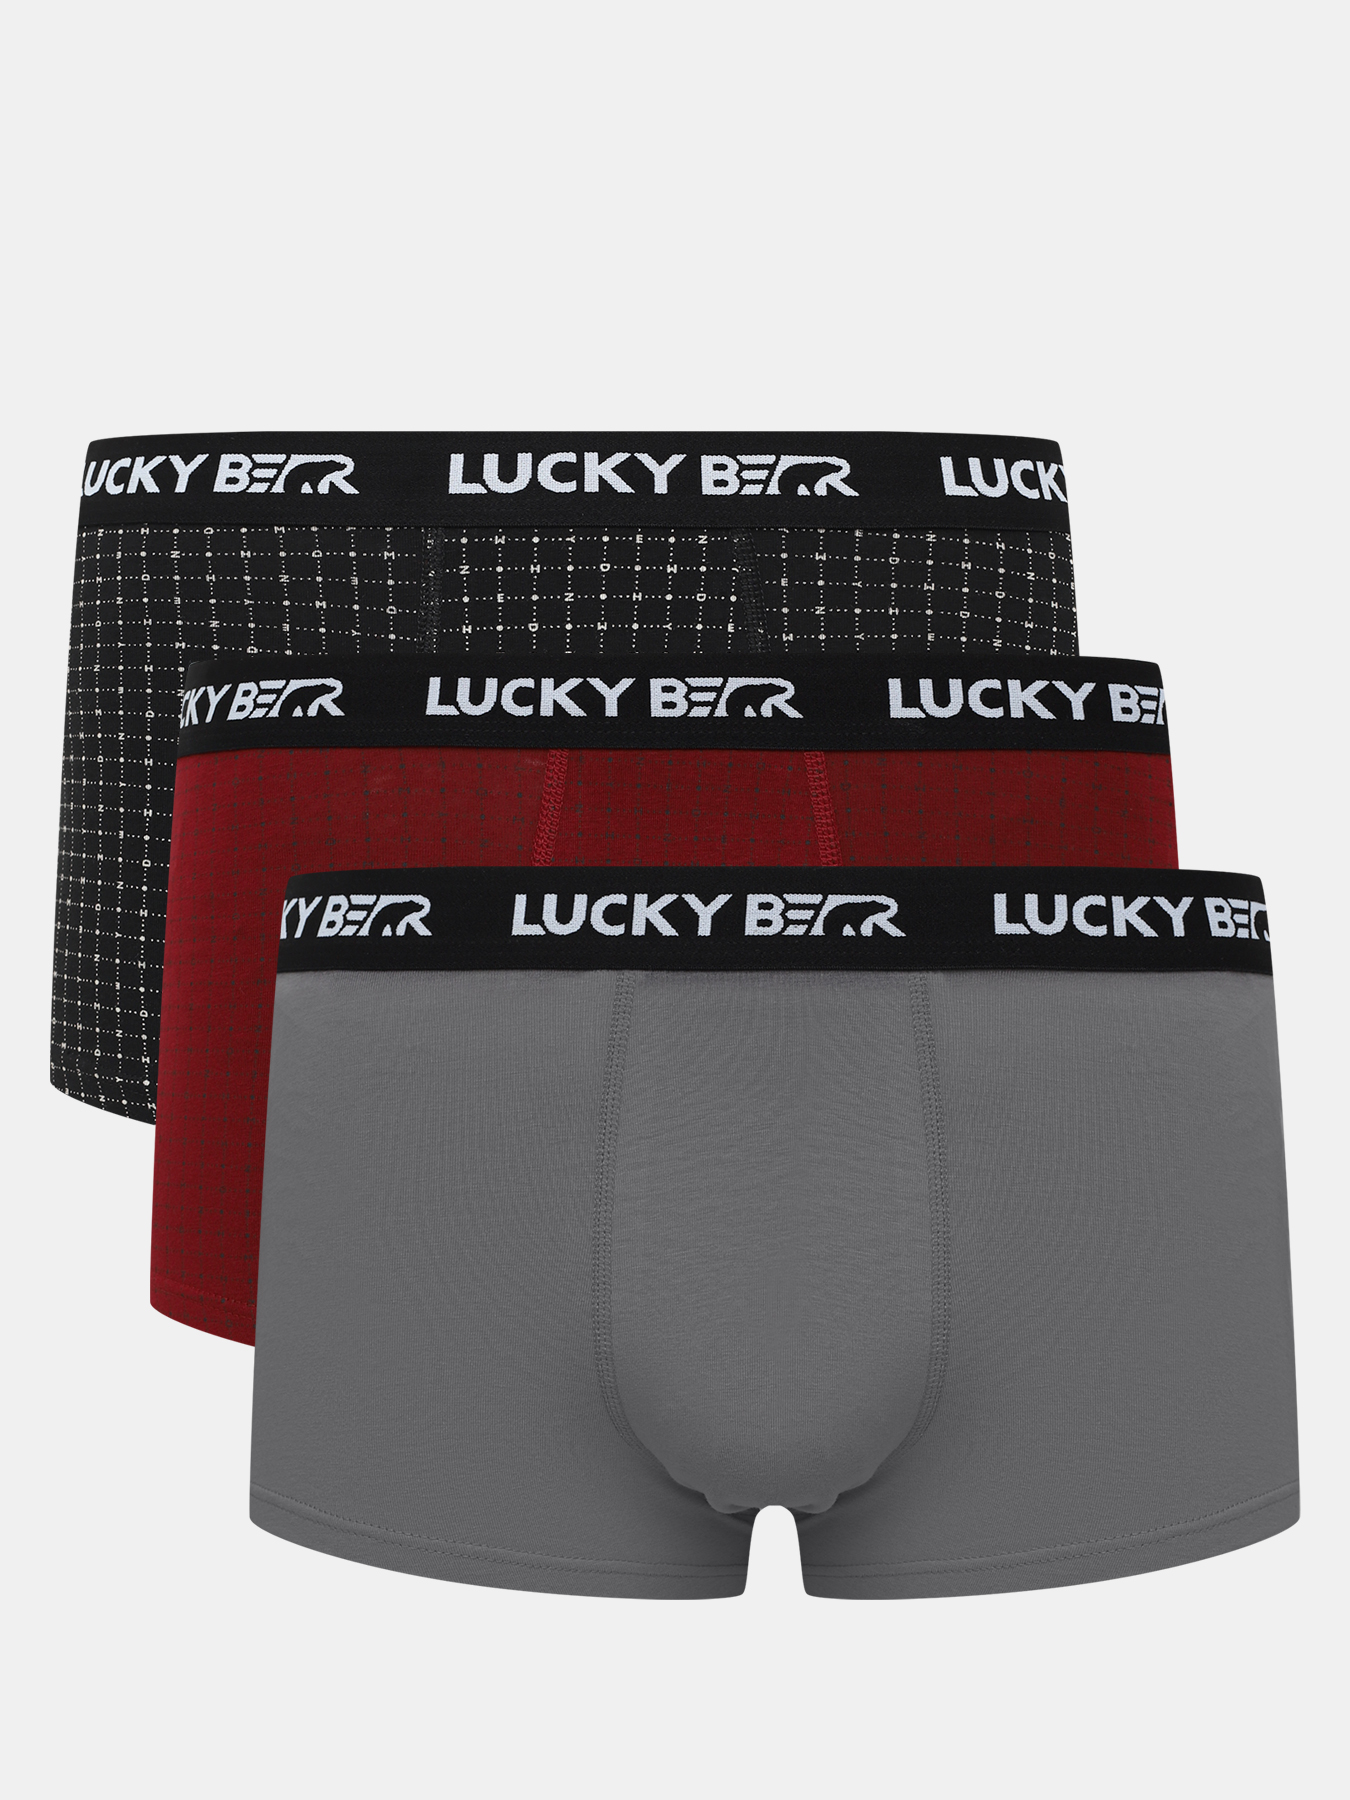 Комплект трусов мужских Lucky Bear 450599 разноцветных L